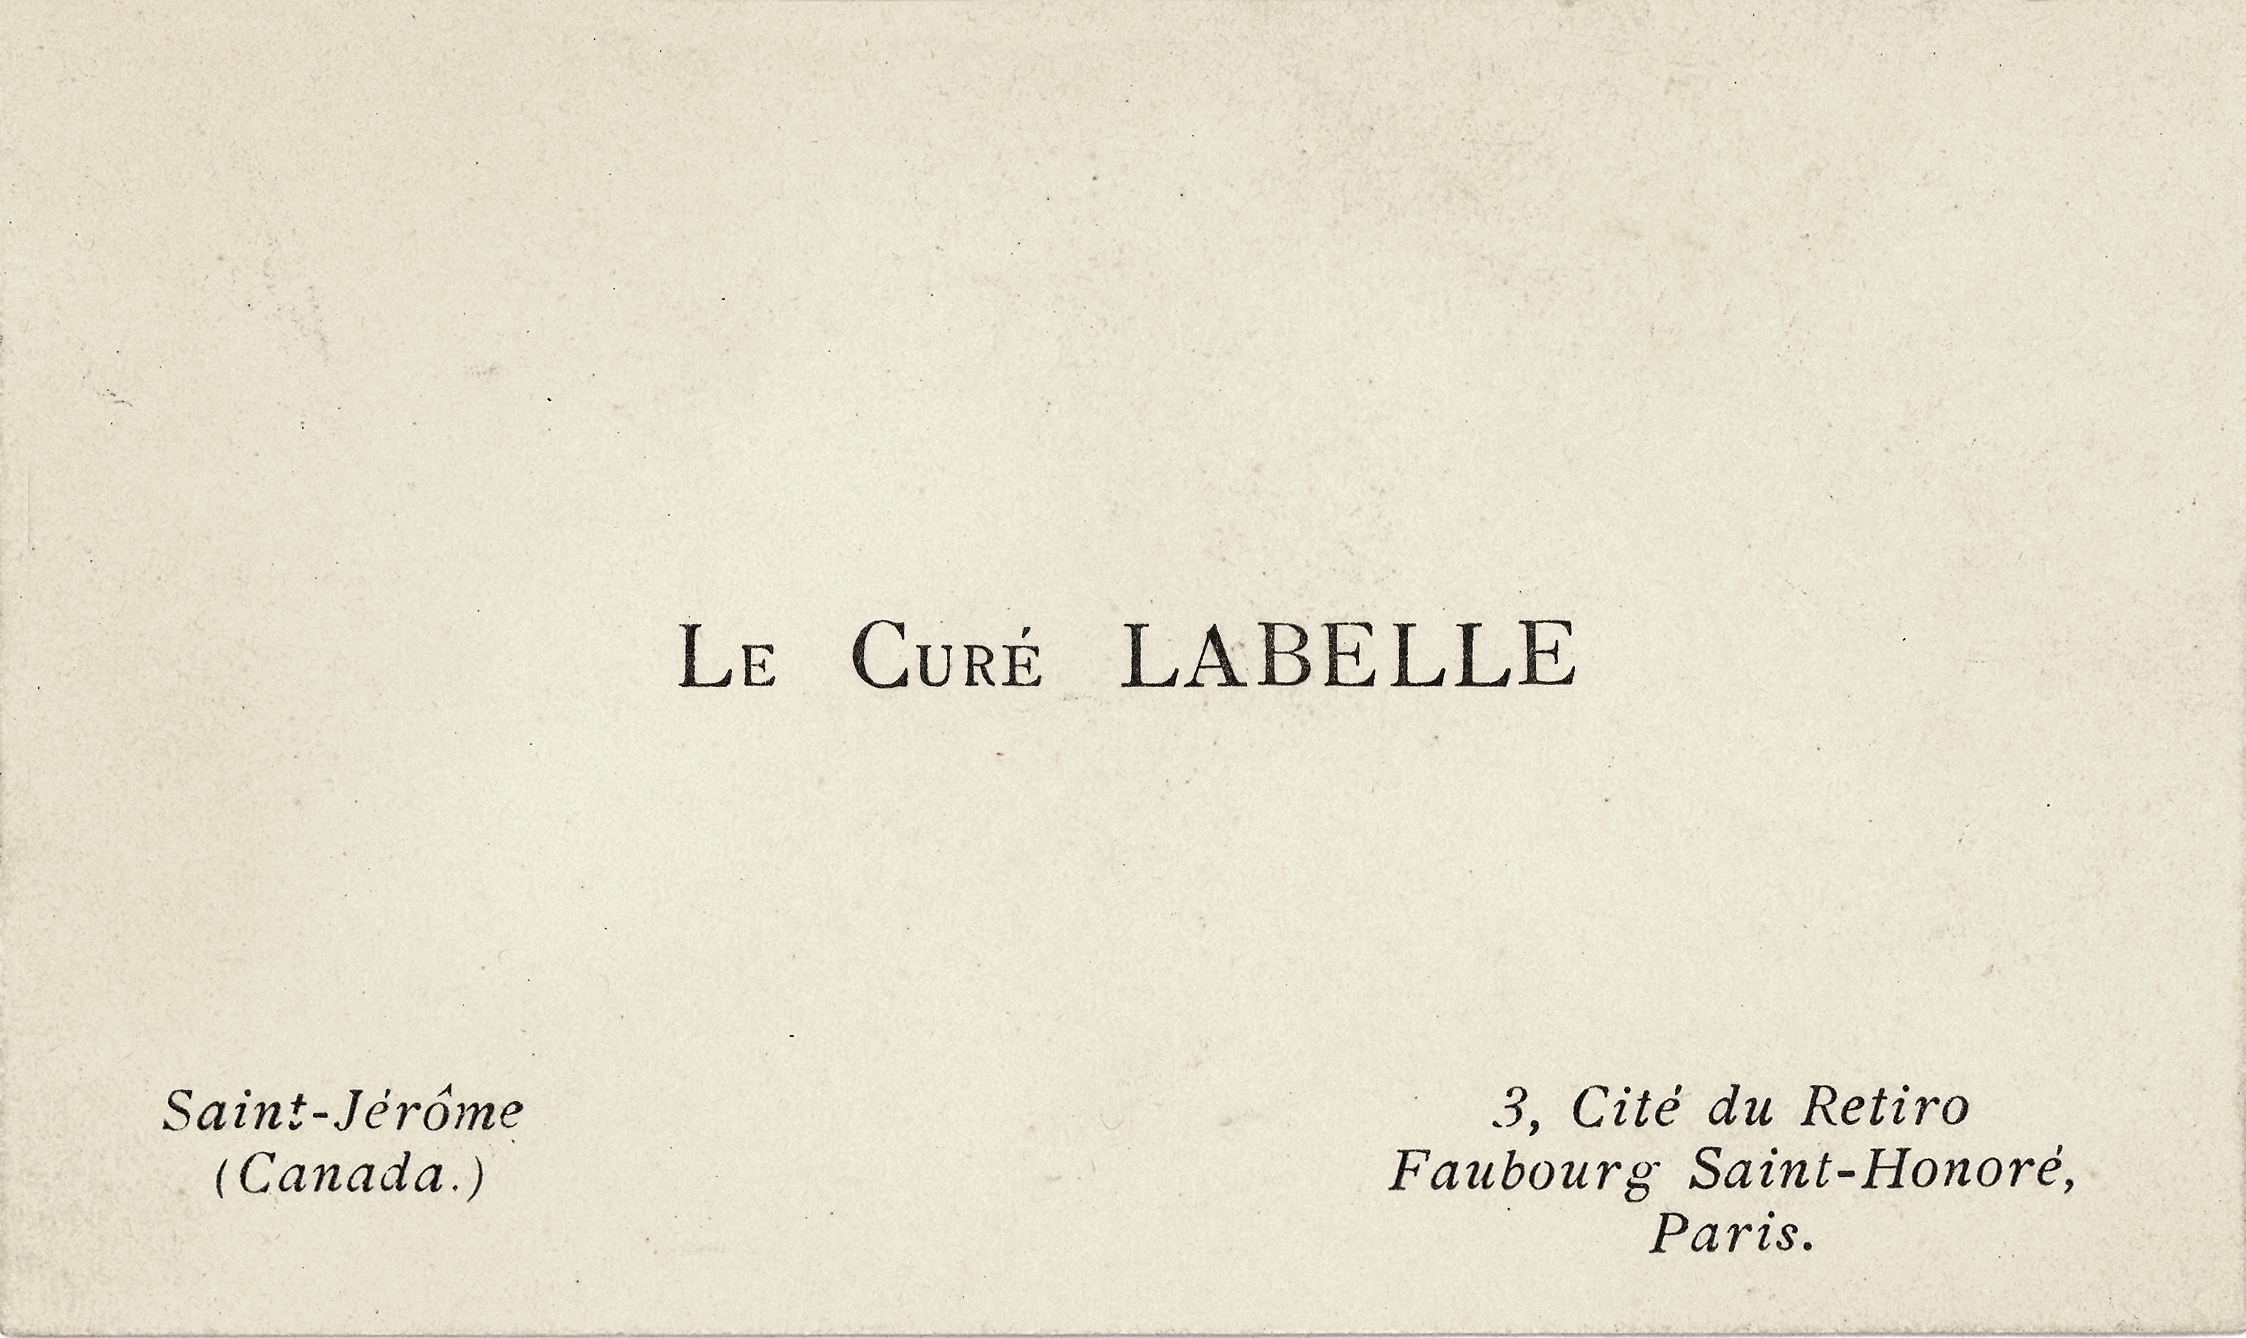 Image montrant un petit carton blanc rectangulaire. Il y est imprimé en noir, en plein centre, « Le curé Labelle ». Au bas du carton, ses coordonnées au Canada et en France. 